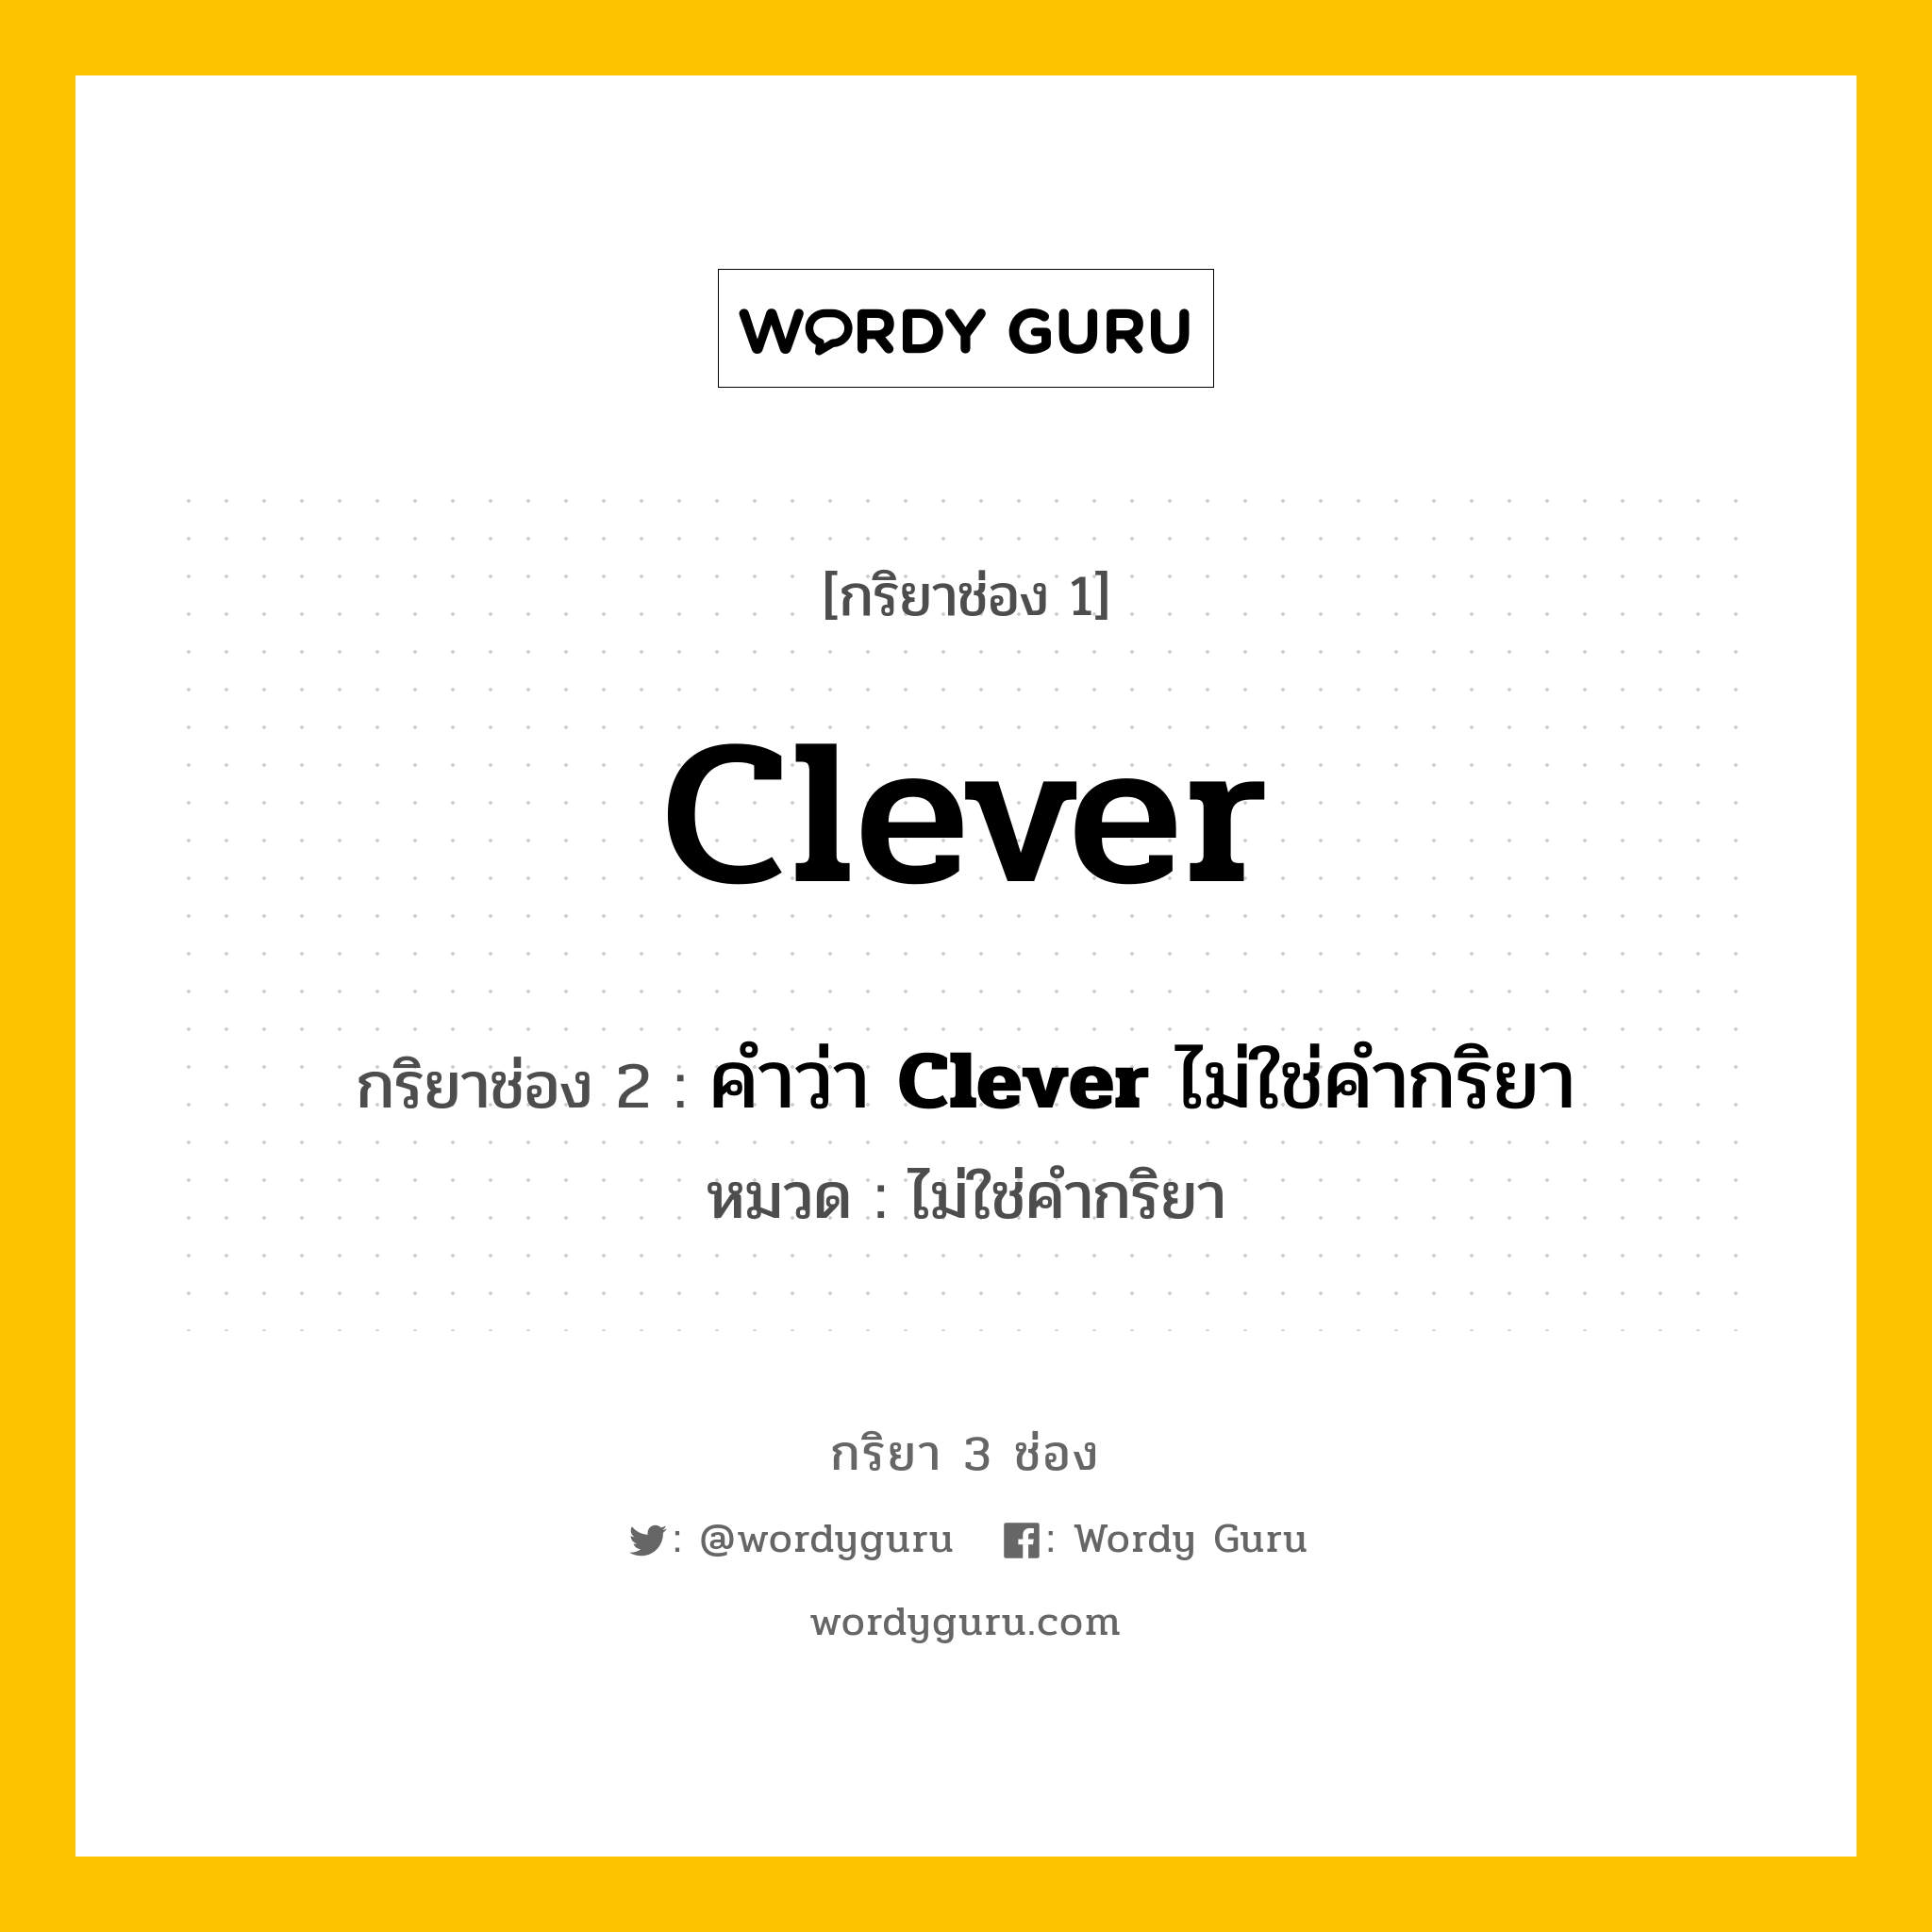 กริยา 3 ช่อง: Clever ช่อง 2 Clever ช่อง 3 คืออะไร, กริยาช่อง 1 Clever กริยาช่อง 2 คำว่า <b>Clever</b> ไม่ใช่คำกริยา หมวด ไม่ใช่คำกริยา หมวด ไม่ใช่คำกริยา